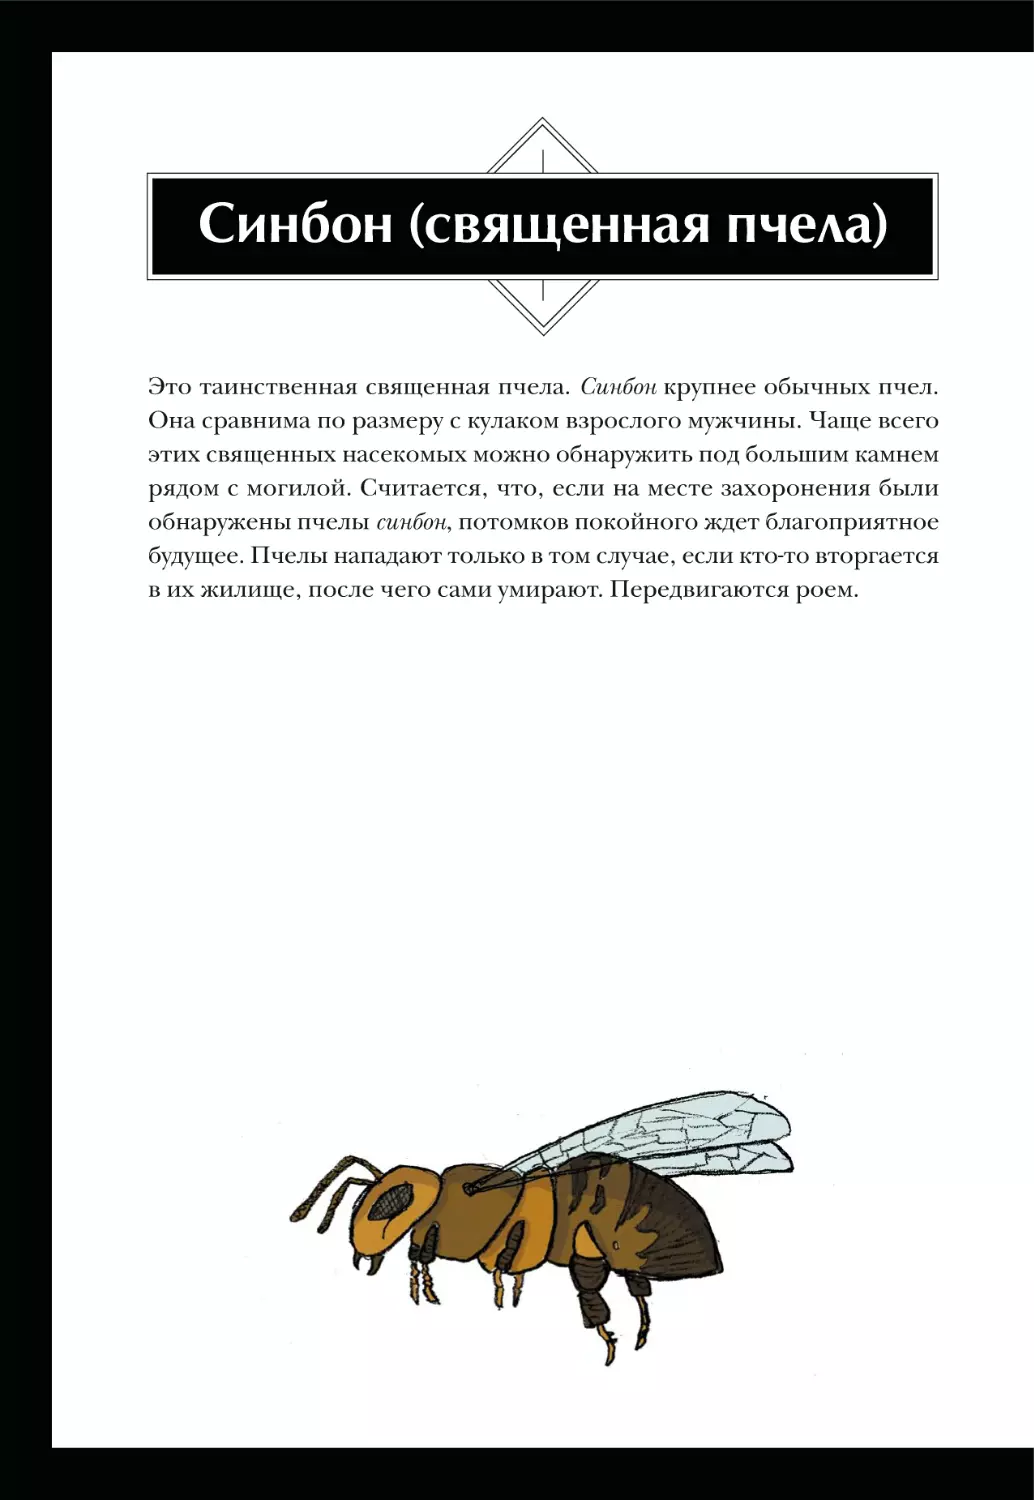 Синбон (священная пчела)